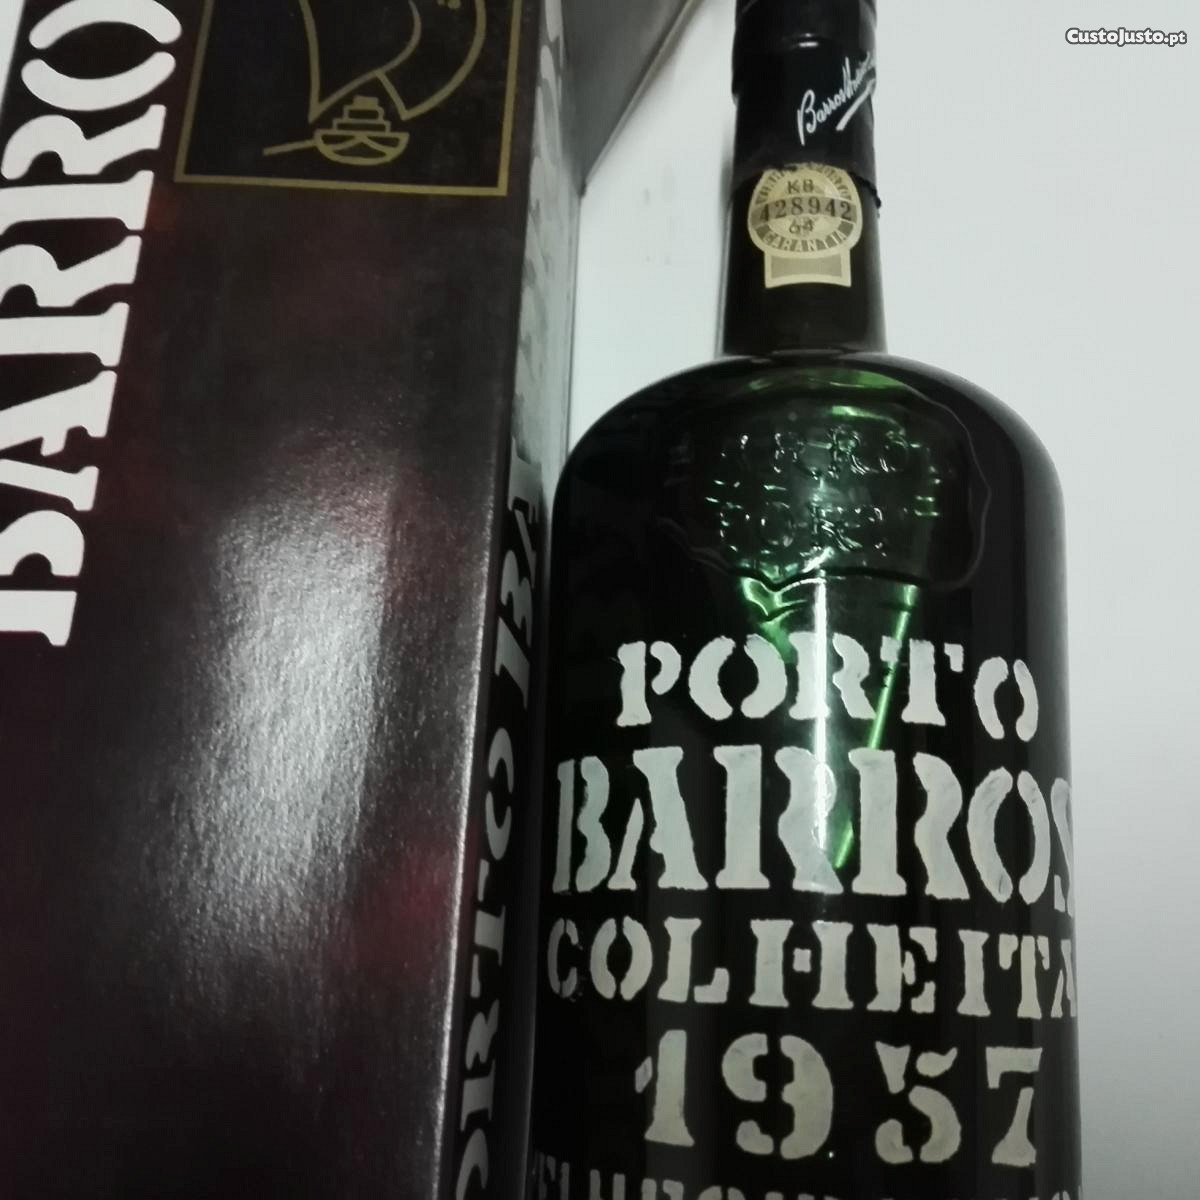 Vinho do Porto Barros Colheita 1957